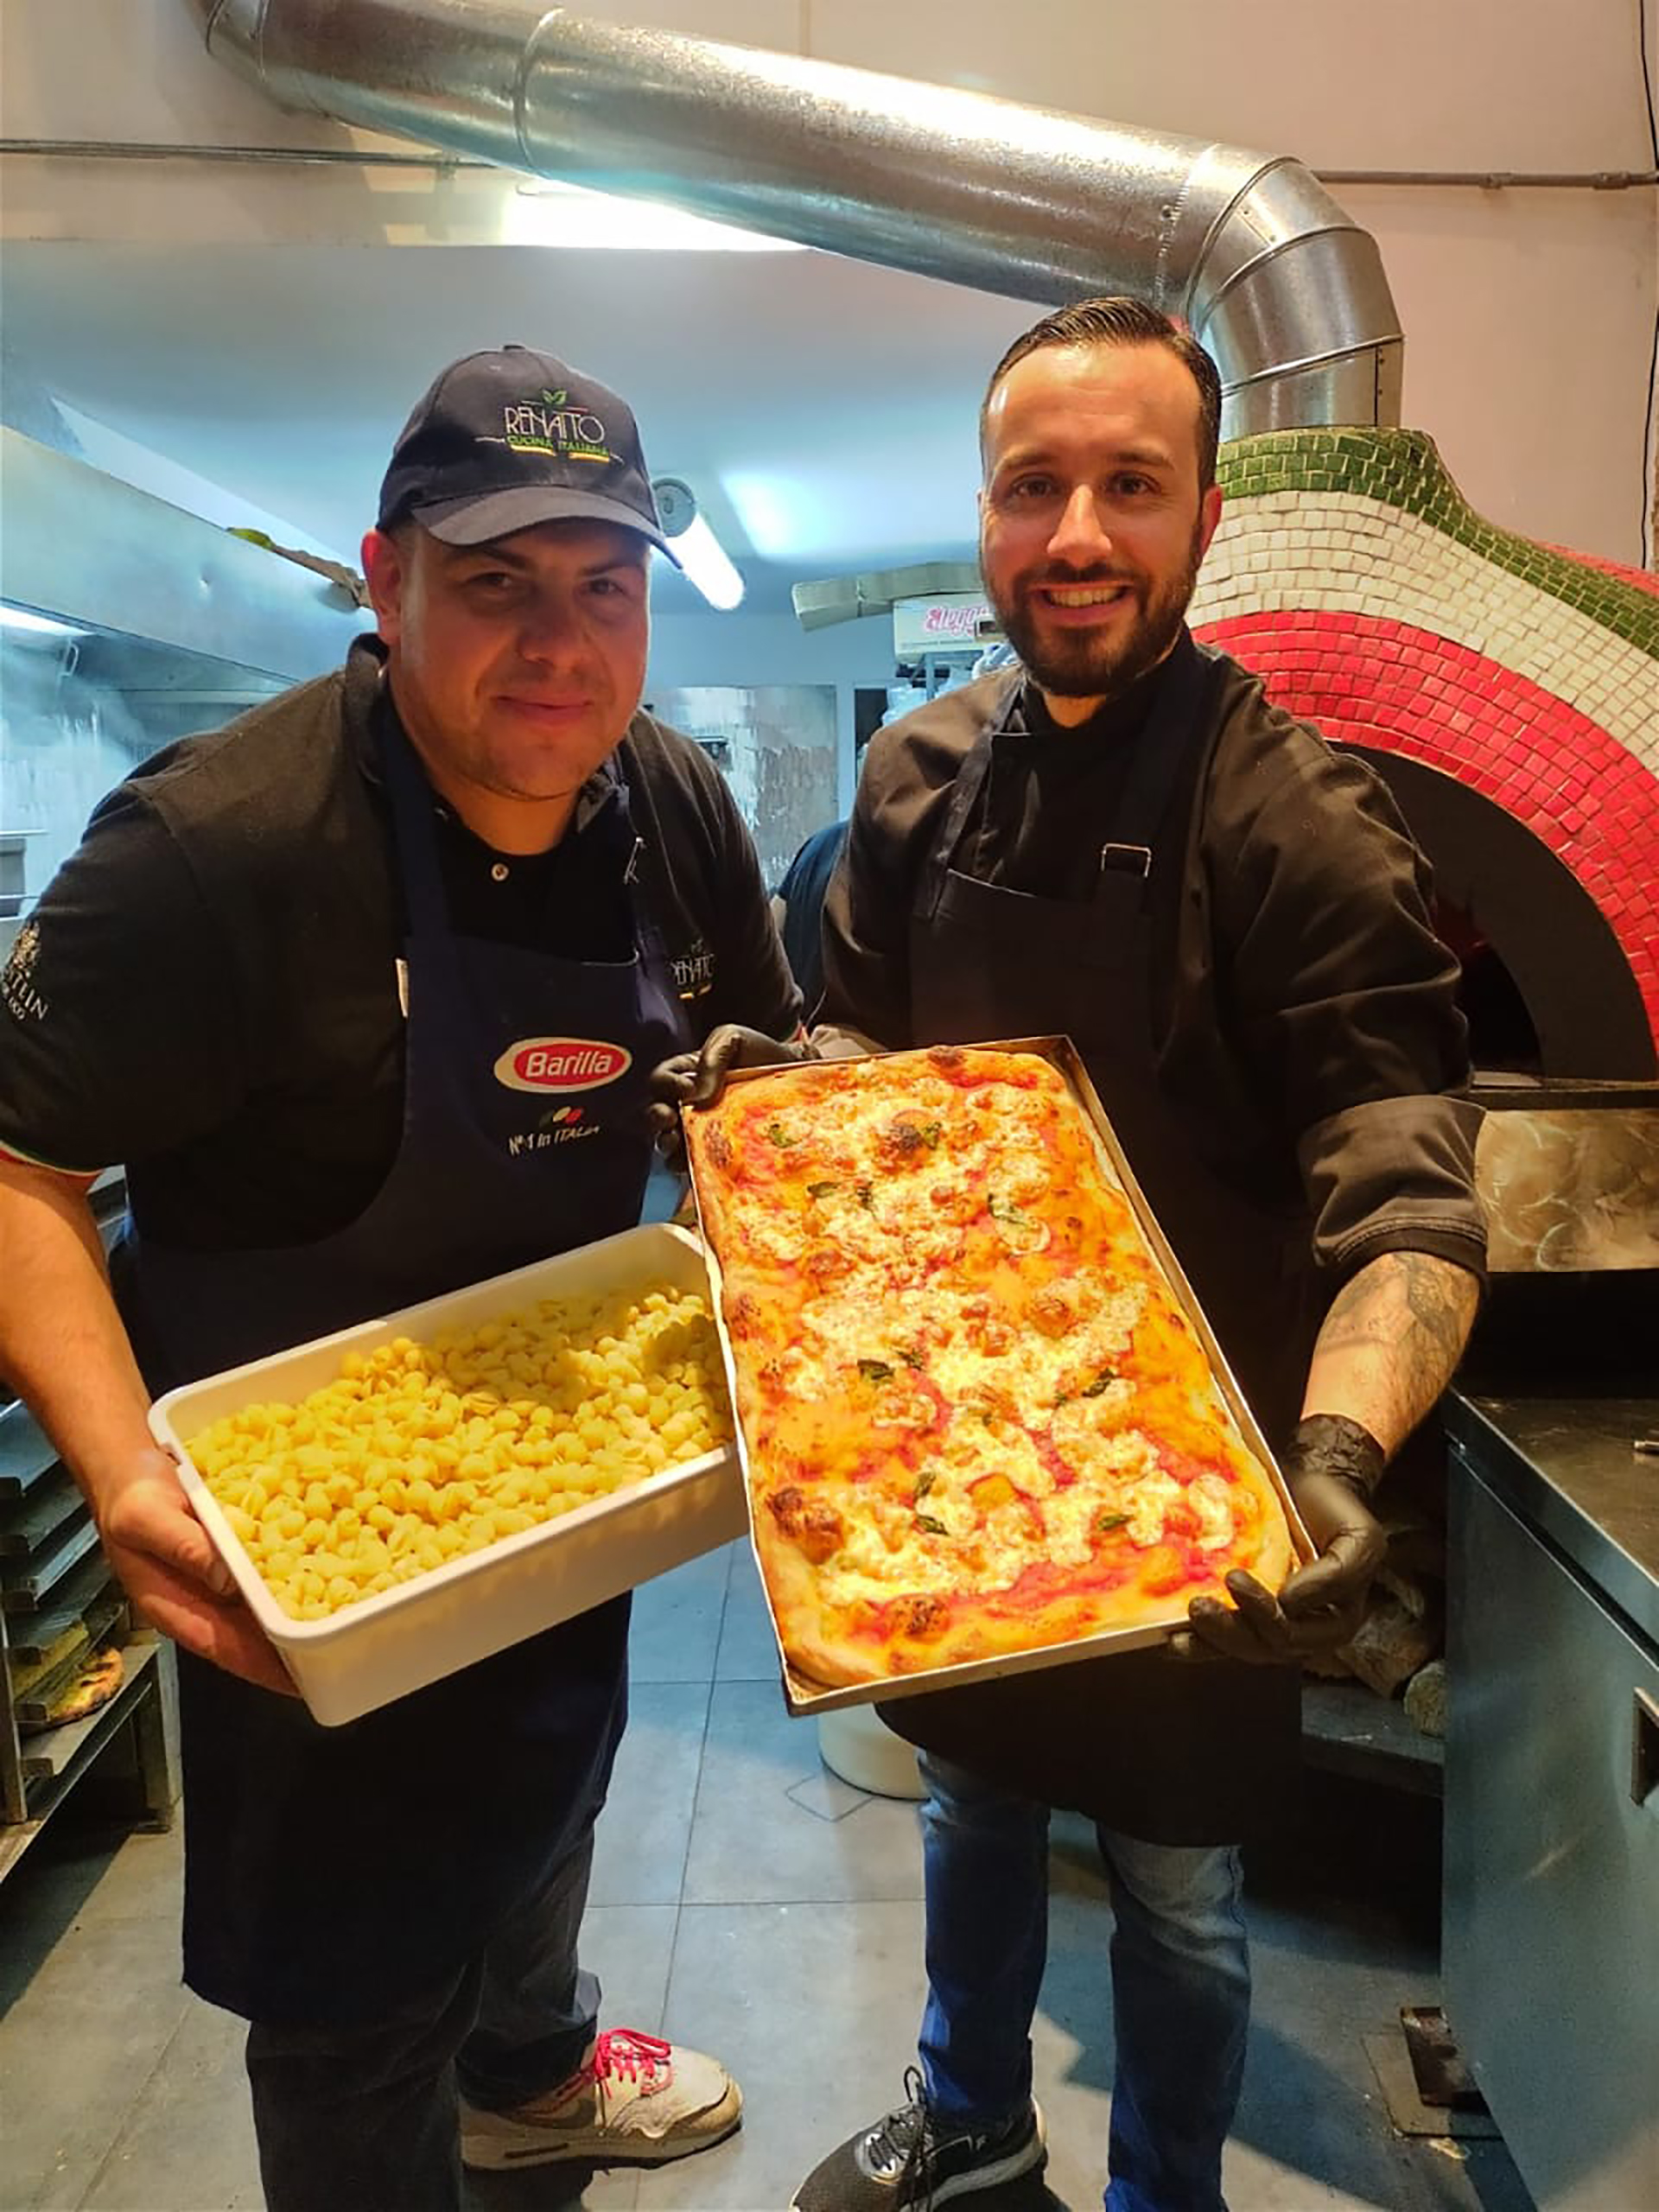 Insieme al compagno Paolo Spertino, un altro italiano di Buenos Aires, che gli ha fatto una proposta gastronomica, la pizza al taglio